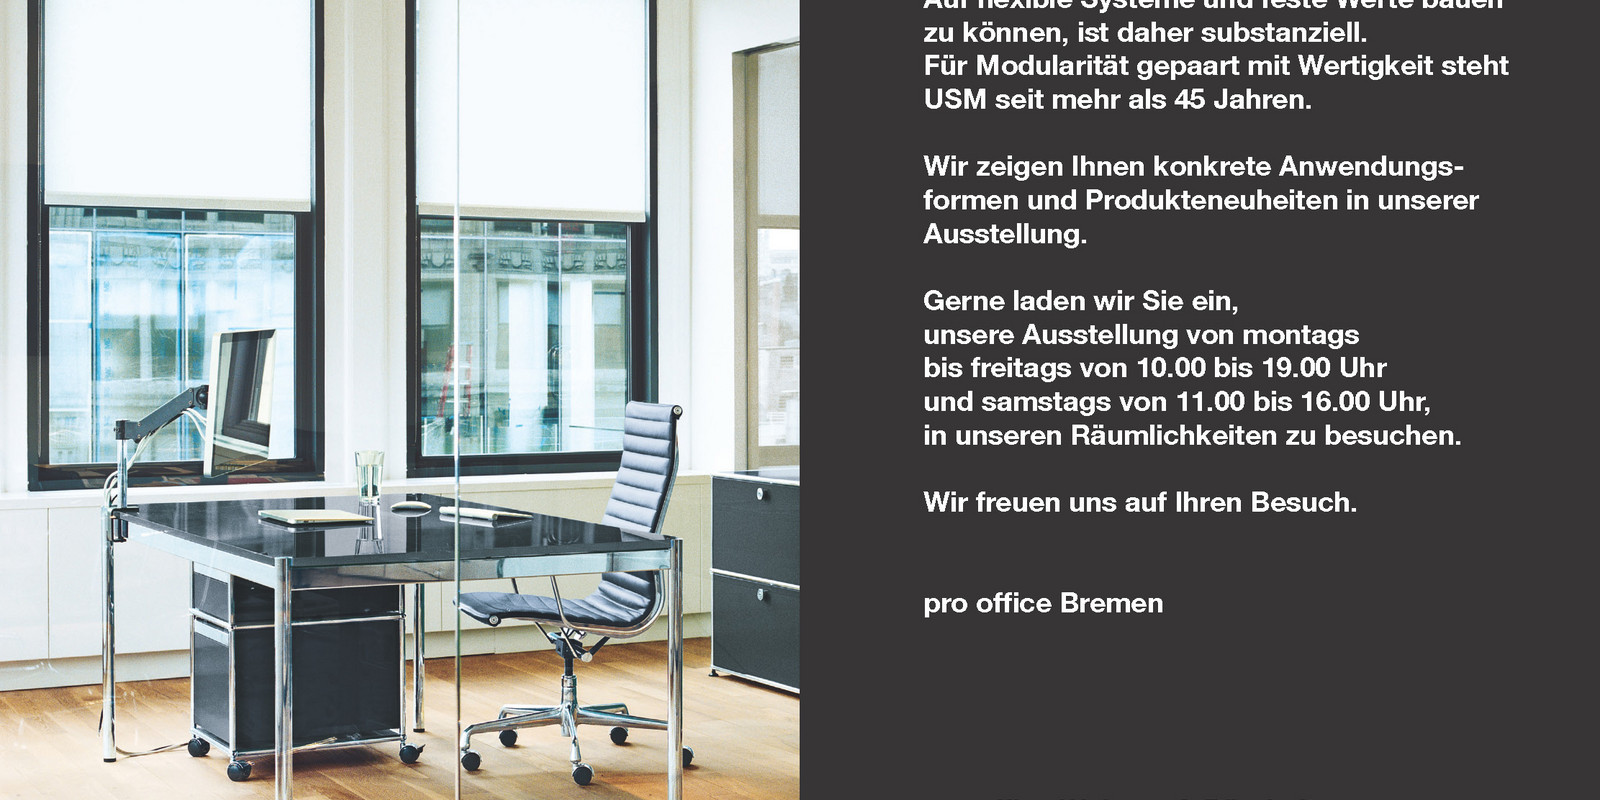 pro office Bremen präsentiert USM Ausstellung « working essentials» 2012 Bild 0